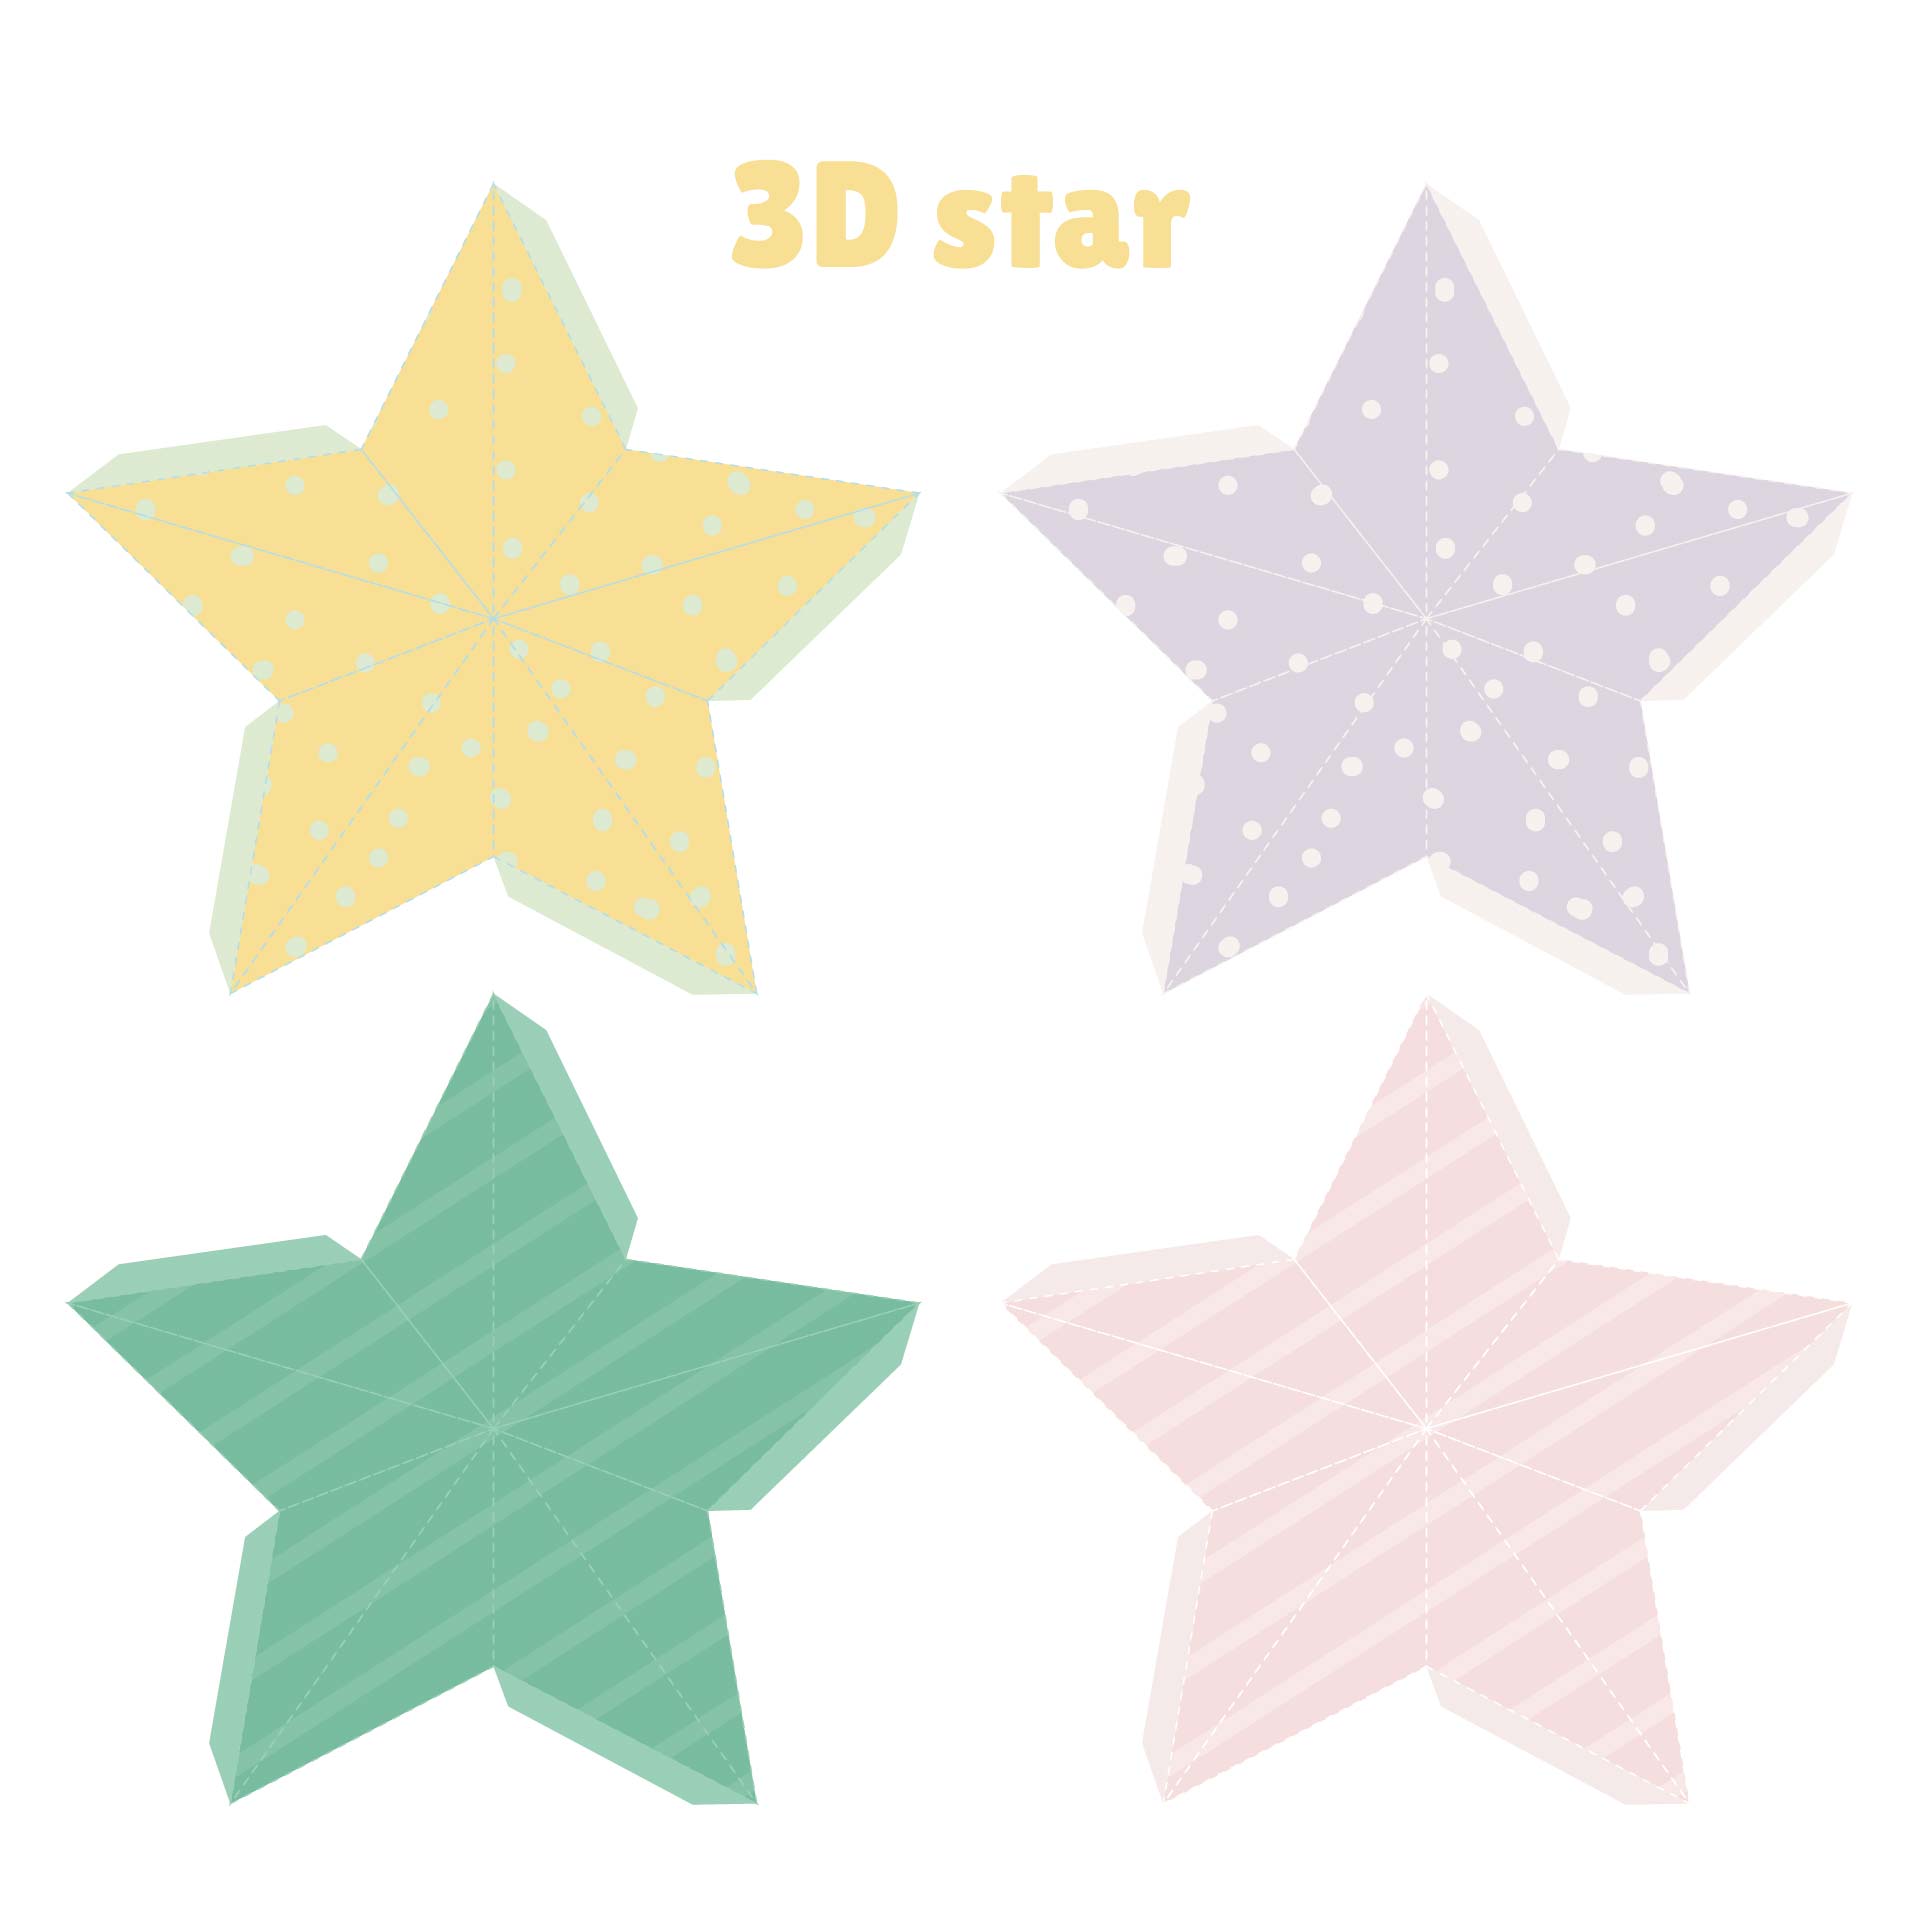 star-shape-template-free-printable-printable-templates